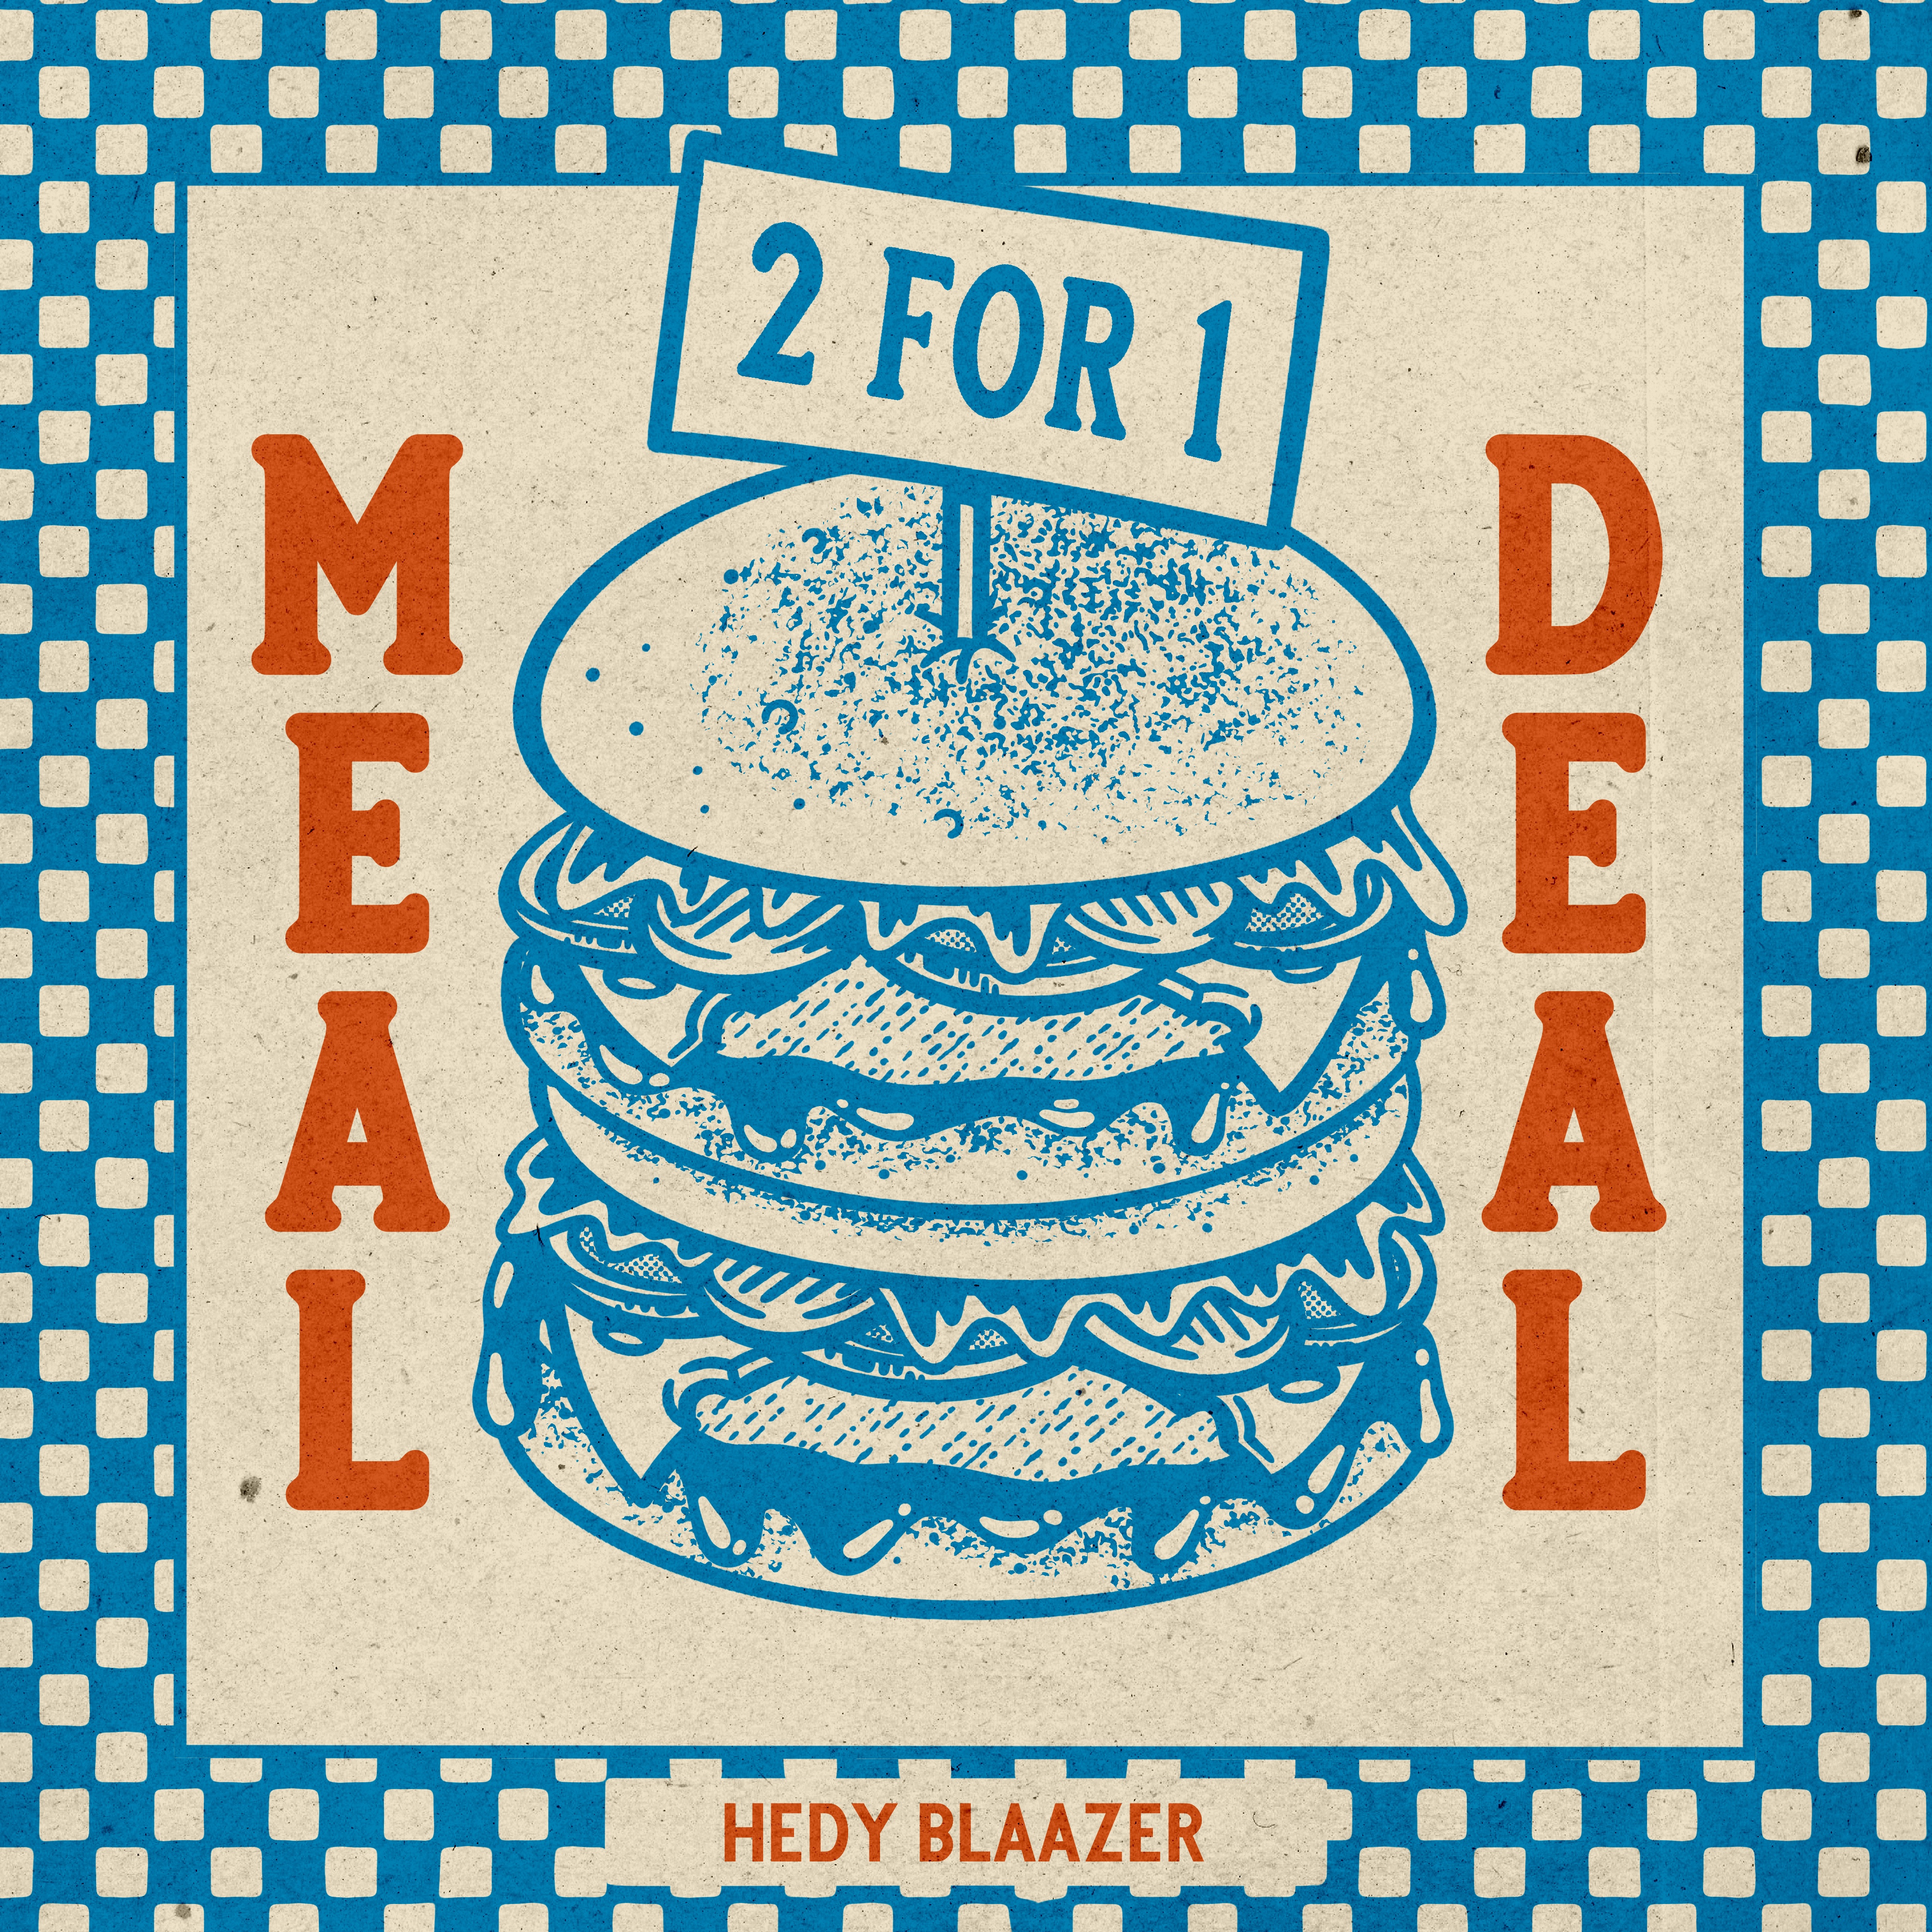 SINGLE PREMIERE: Hedy Blaazer – 2for1 Meal Deal